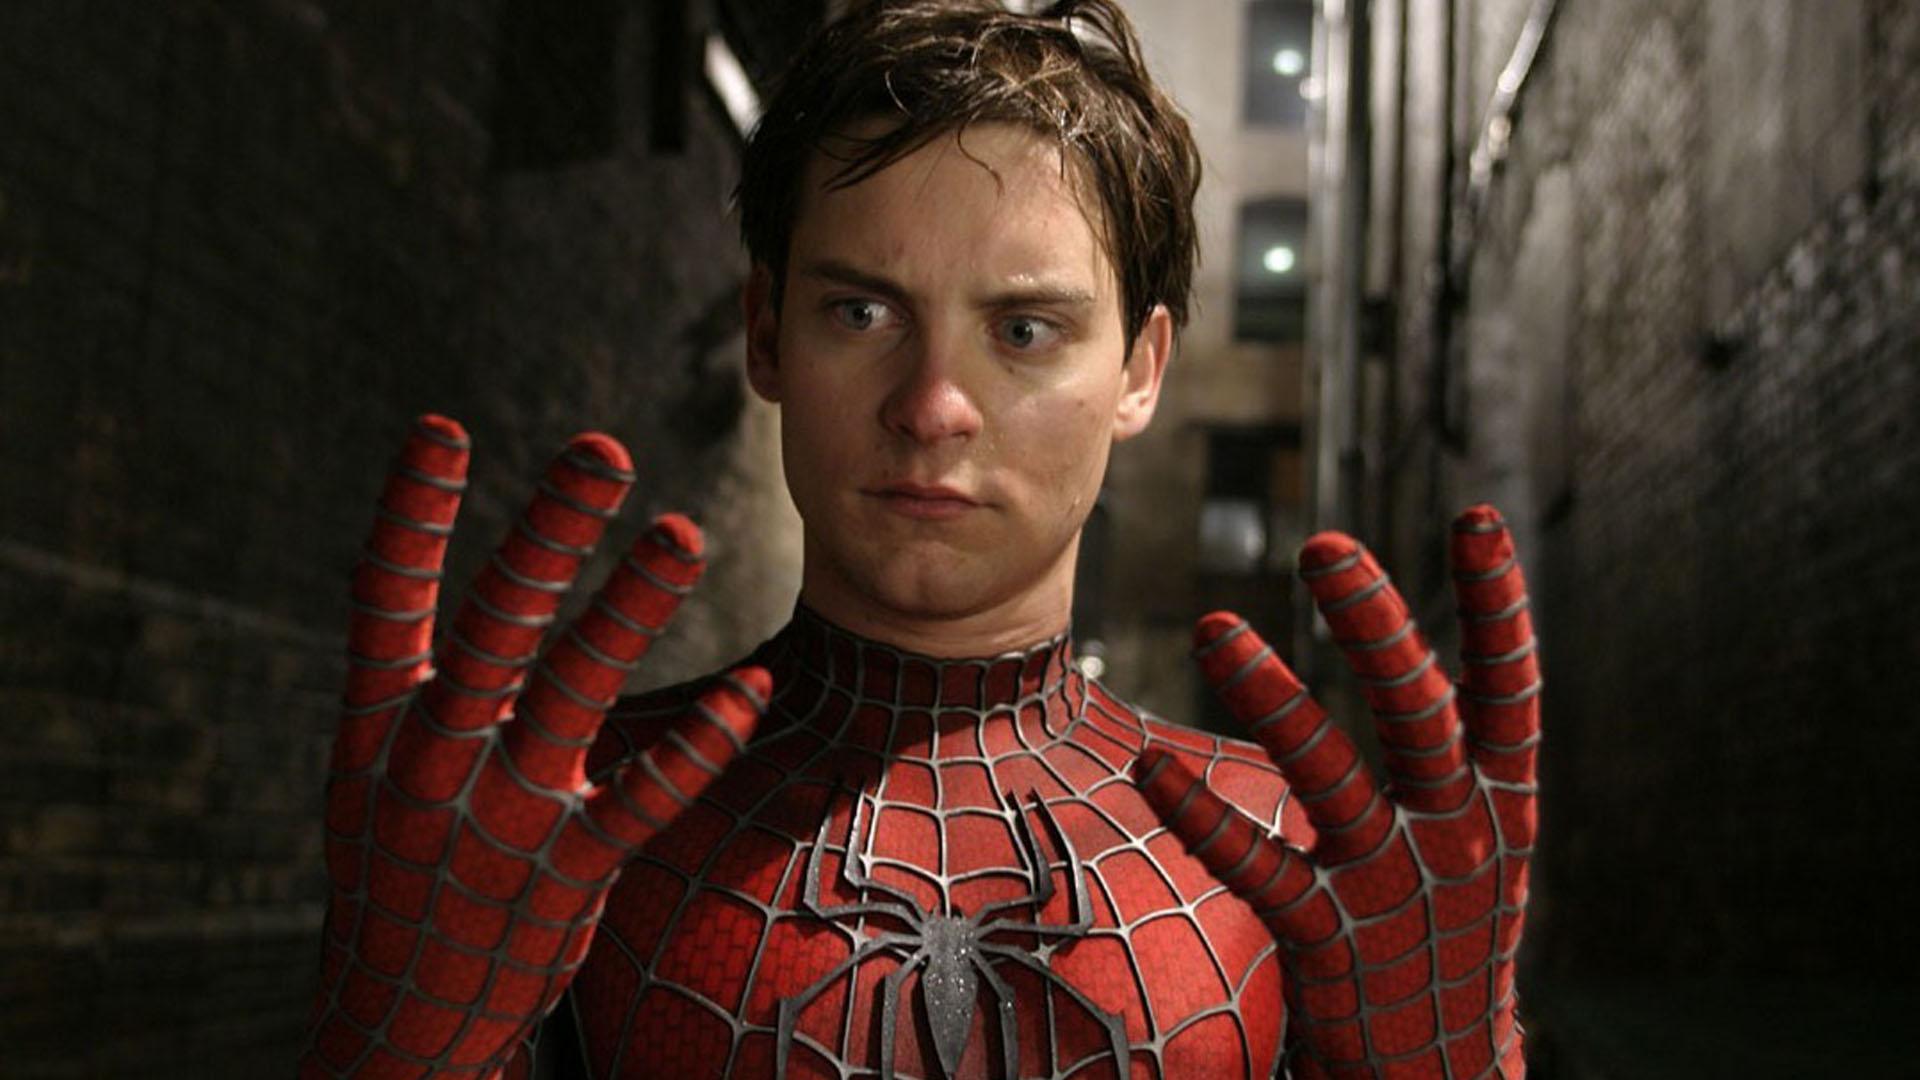 انتشار تصویری از لباس والچر در فیلم لغوشده Spider-Man 4